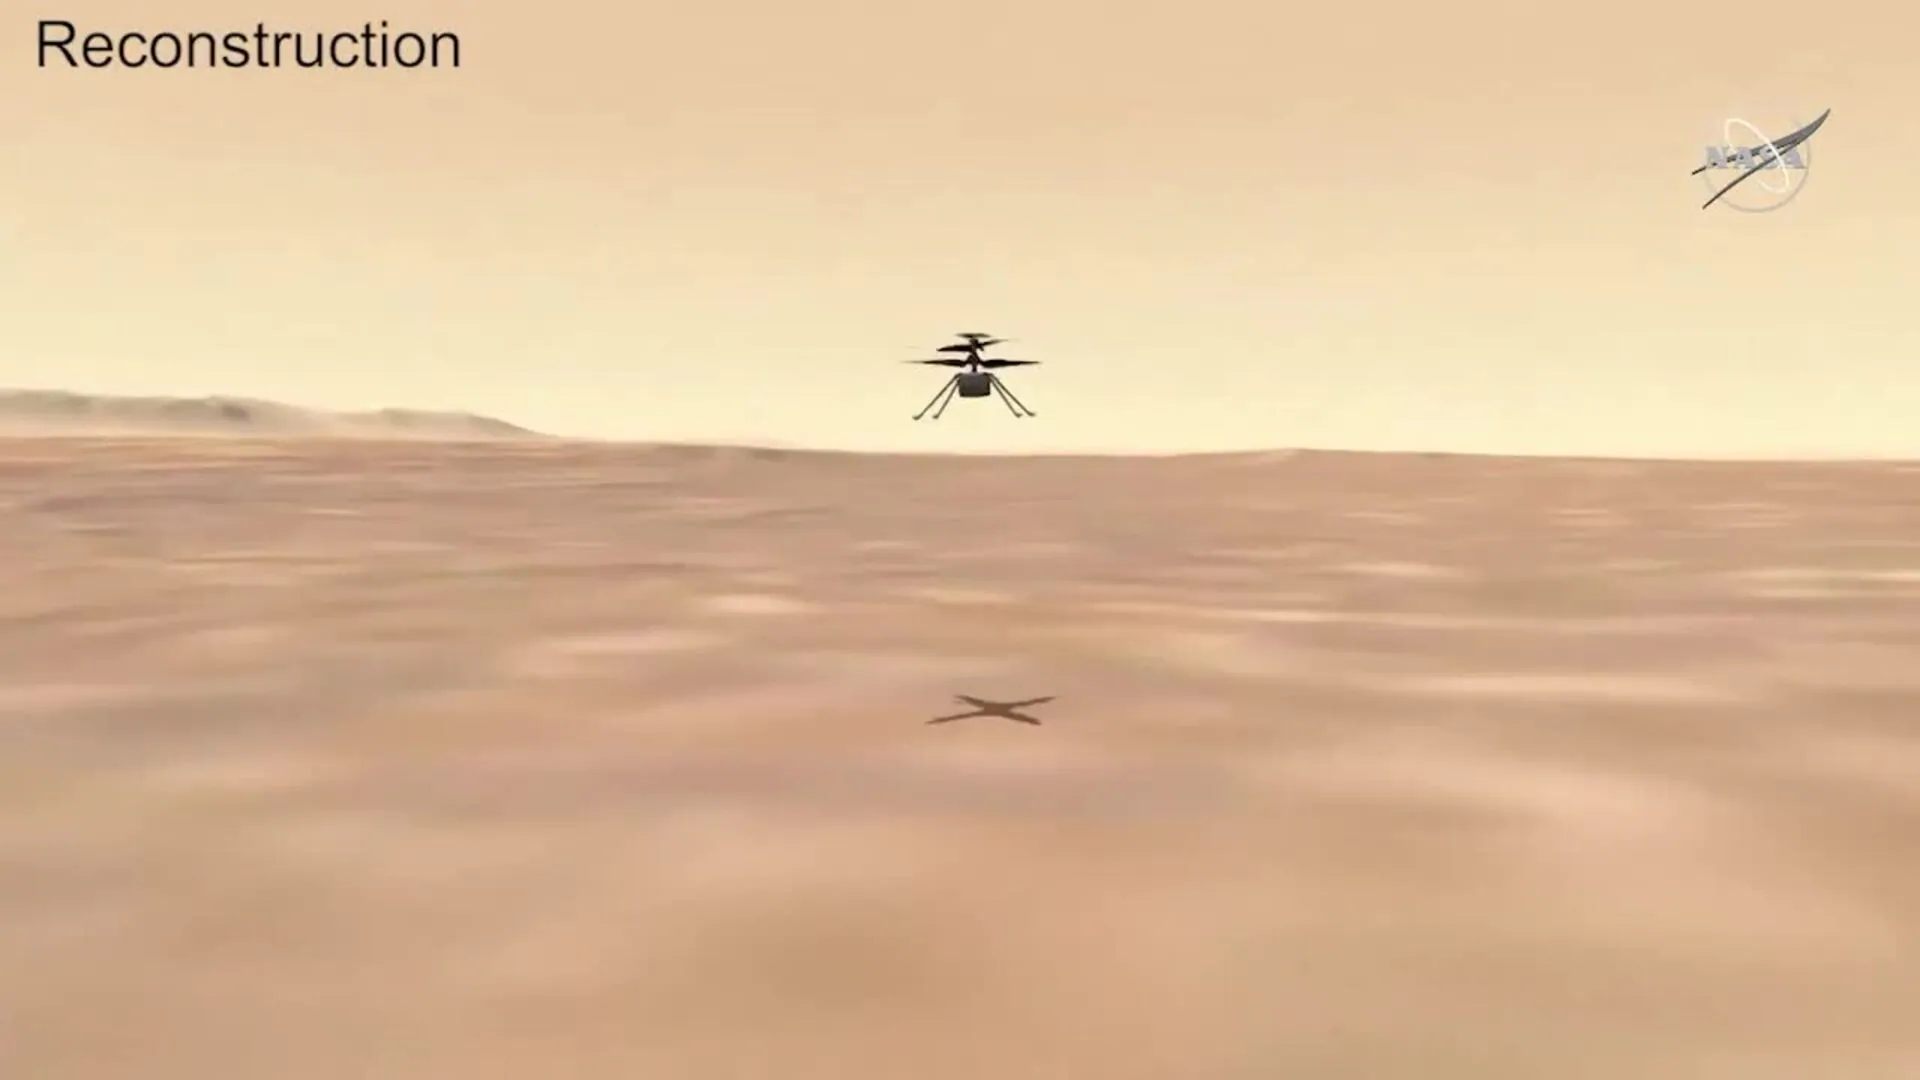 Ingenuity bate récord de altura en vuelo en Marte